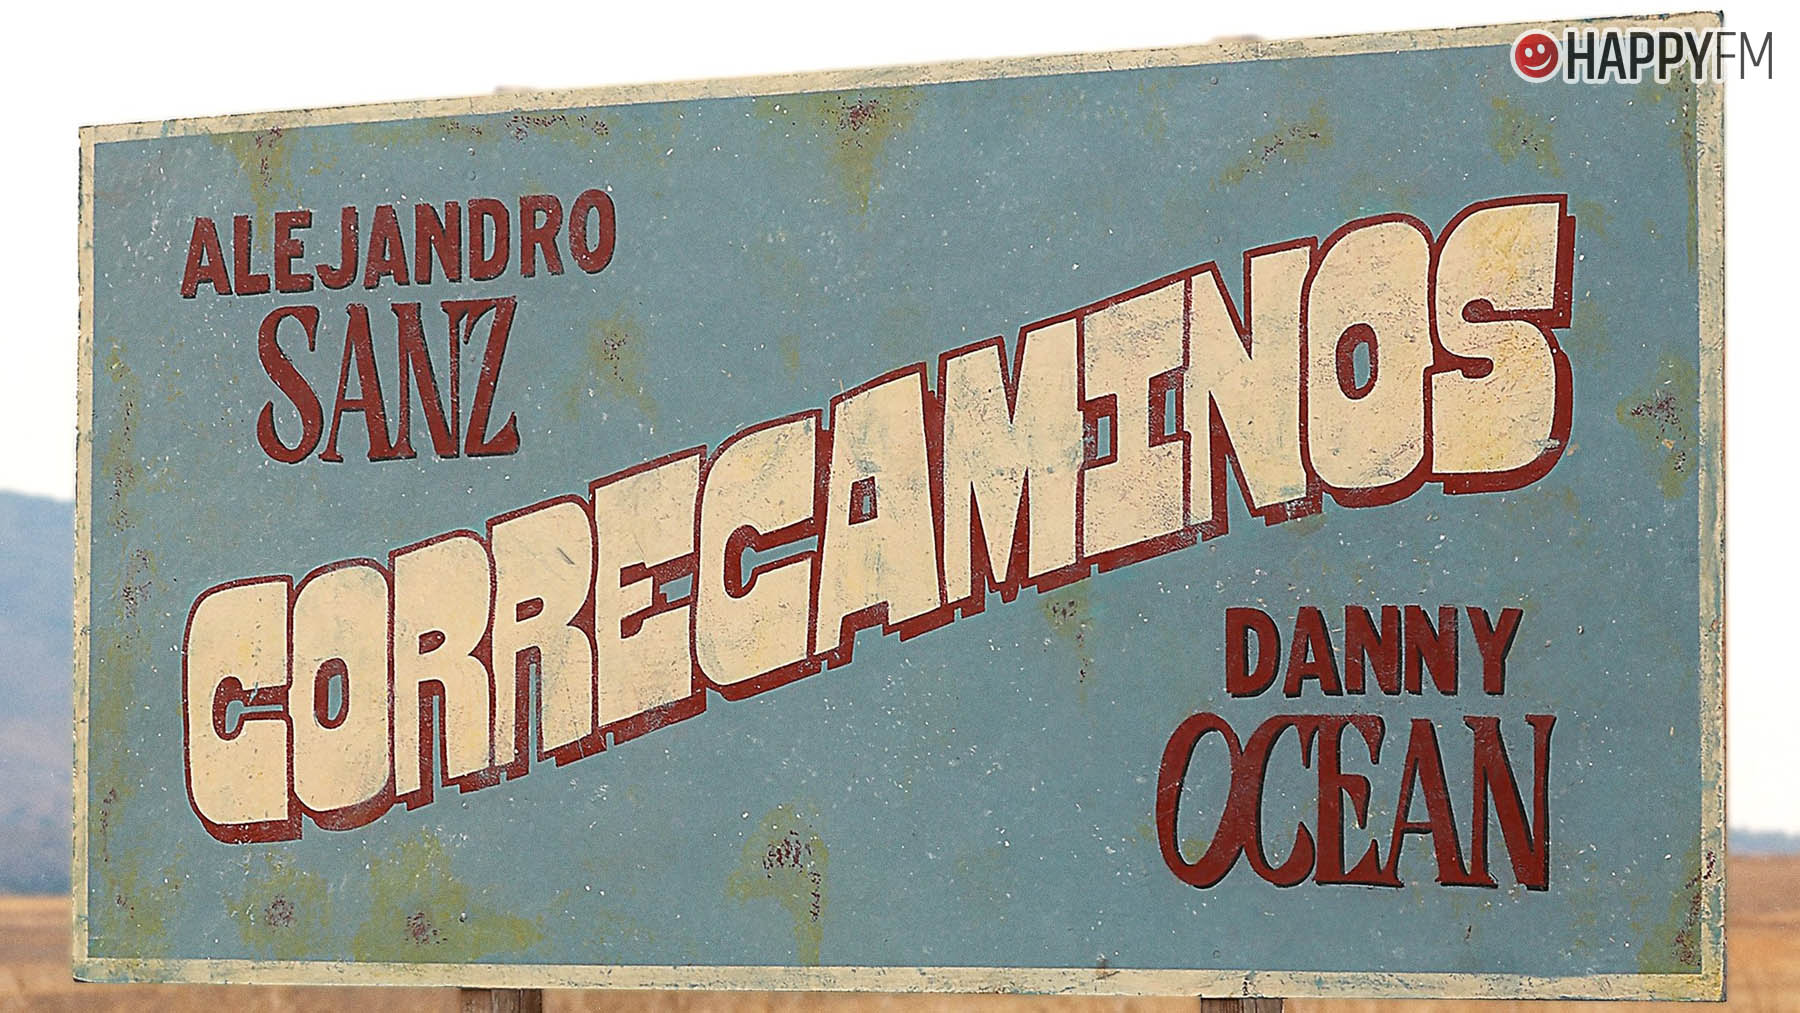 Alejandro Sanz y Danny Ocean en Correcaminos.